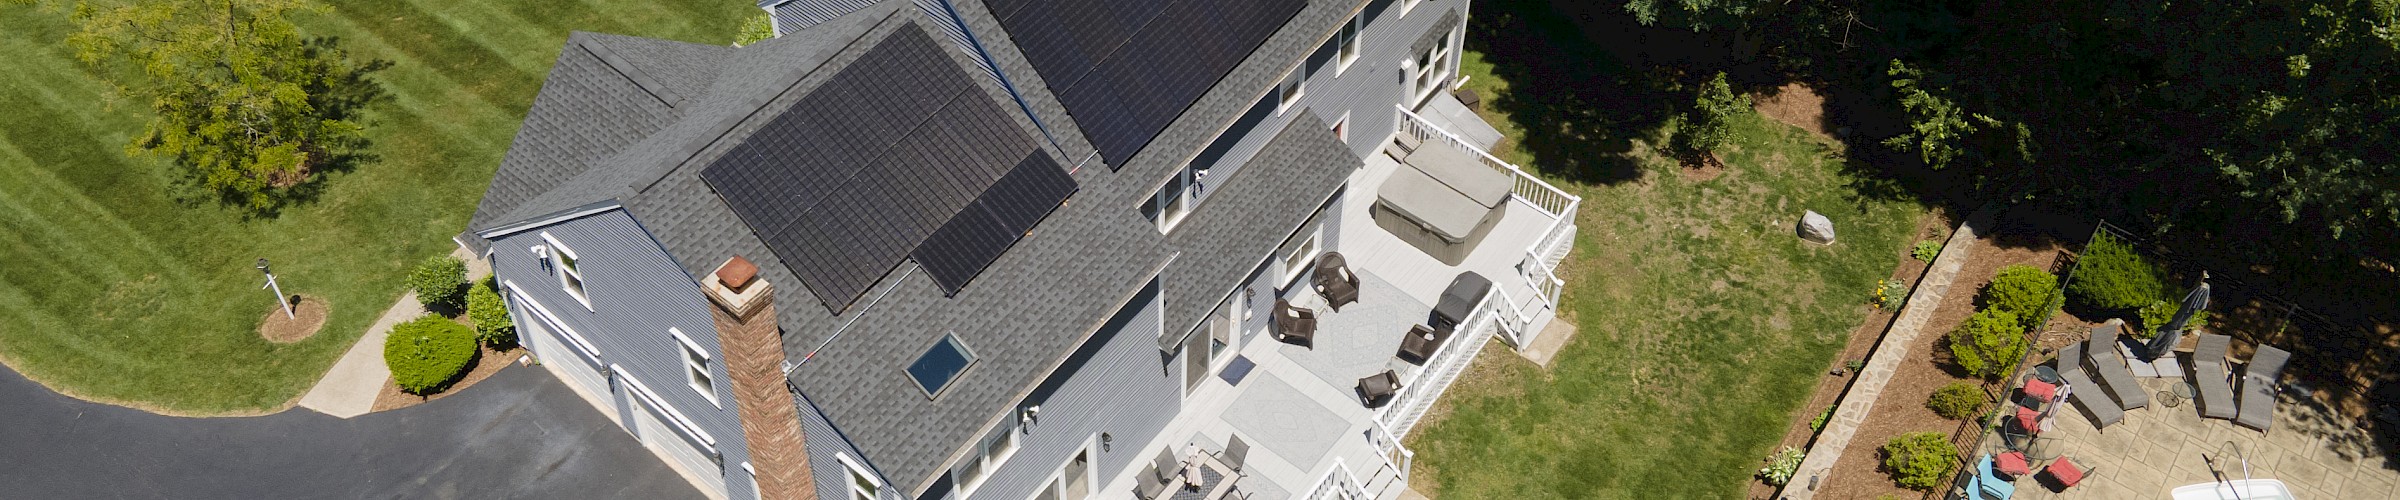 13.06 kW Solar Installation in Westborough, MA